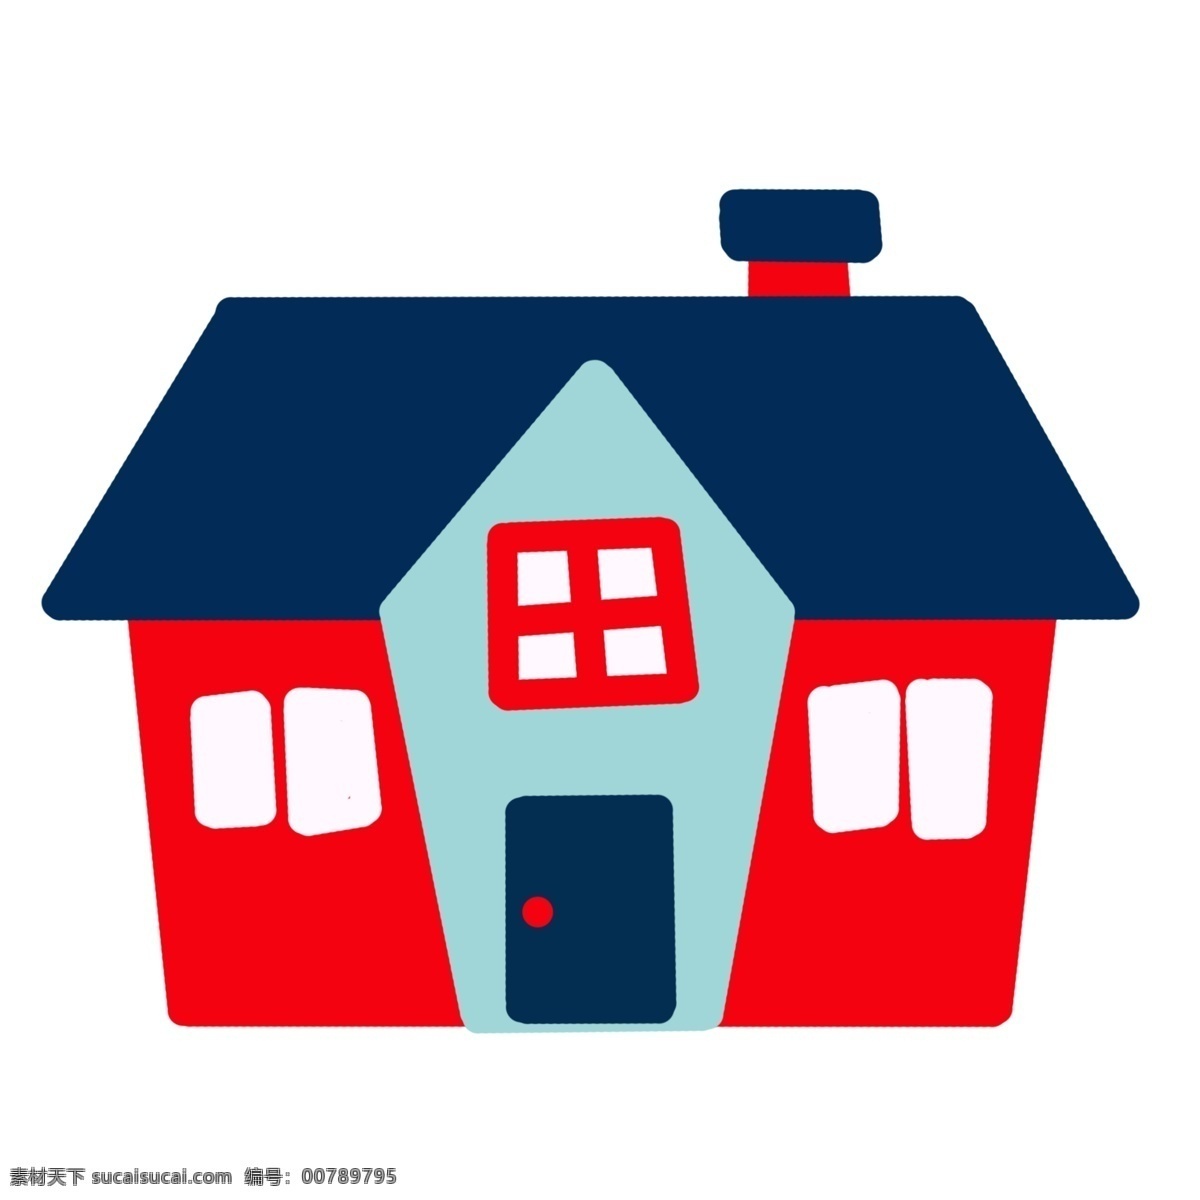 红色 创意 房屋 插图 蓝色的门 红色房屋 图案房屋 农村房屋 简约的房屋 卡通房屋 立体房屋 装饰房屋